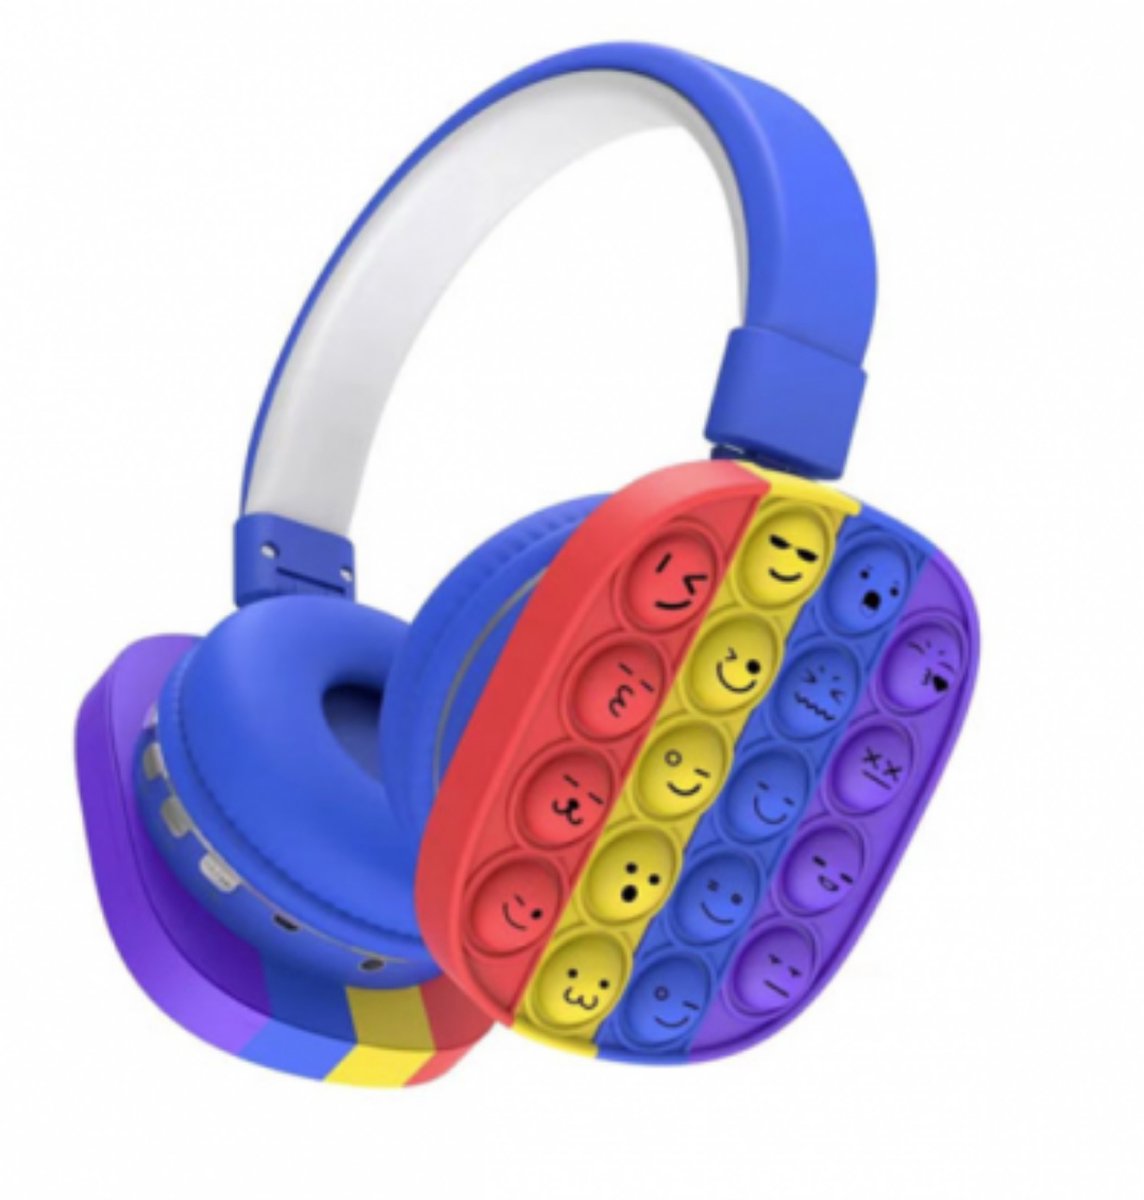 Koptelefoon Pop it fidget met smiley's gezichten voor kinderen - Bluetooth Koptelefoon voor kinderen - Regenboog Hoofdtelefoon - Headset - Blauw